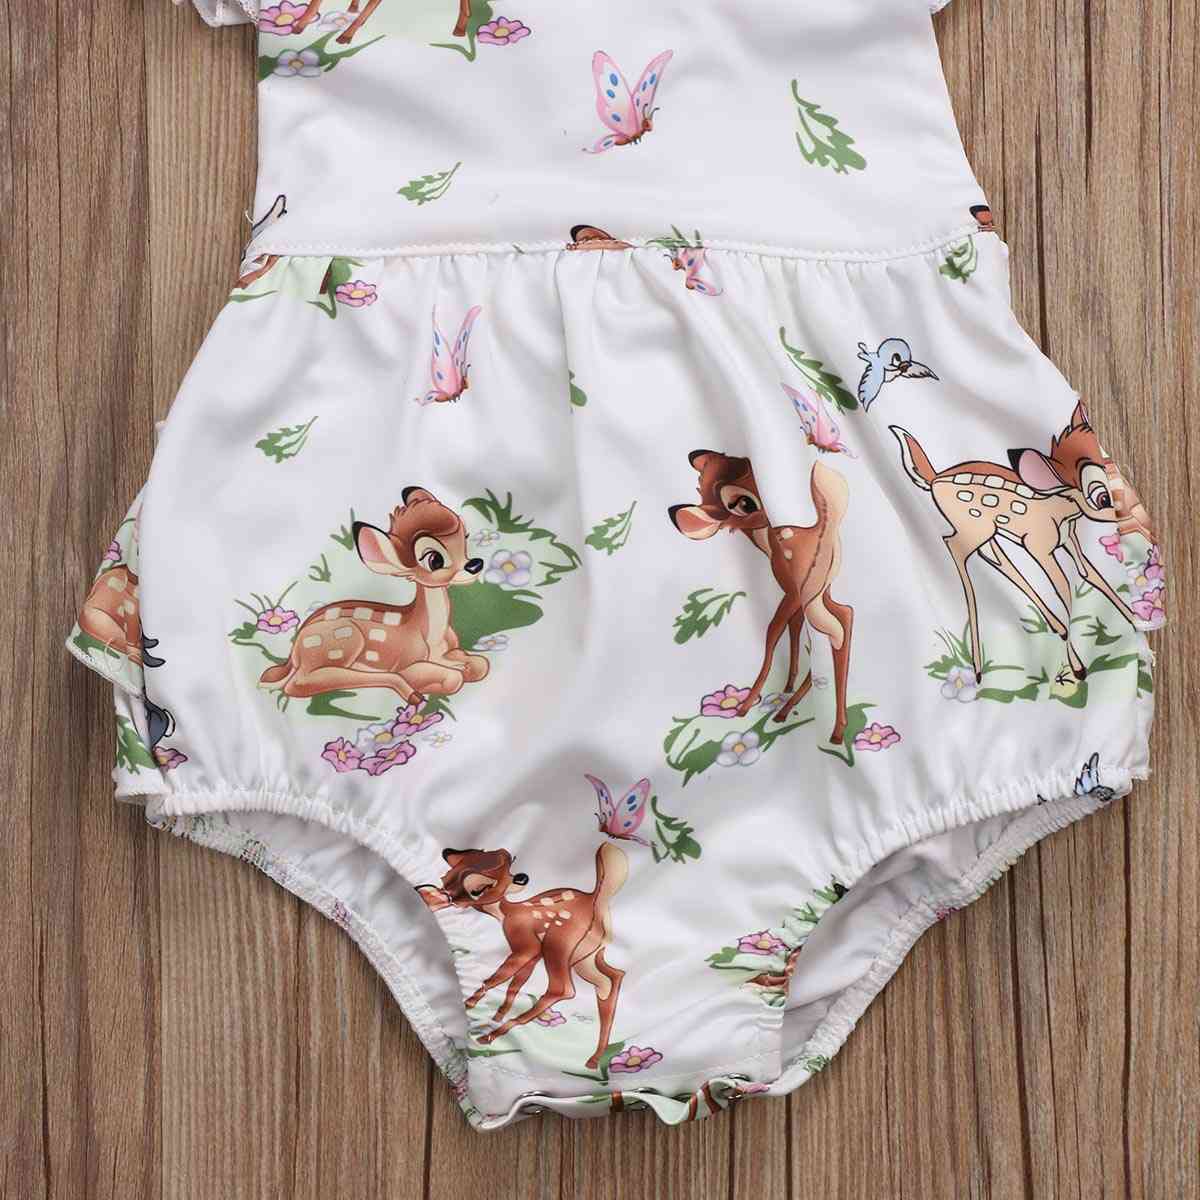 Mote nyfødt småbarn spedbarn baby jenter hjort ruffles romper jumpsuit klær antrekk - 6m